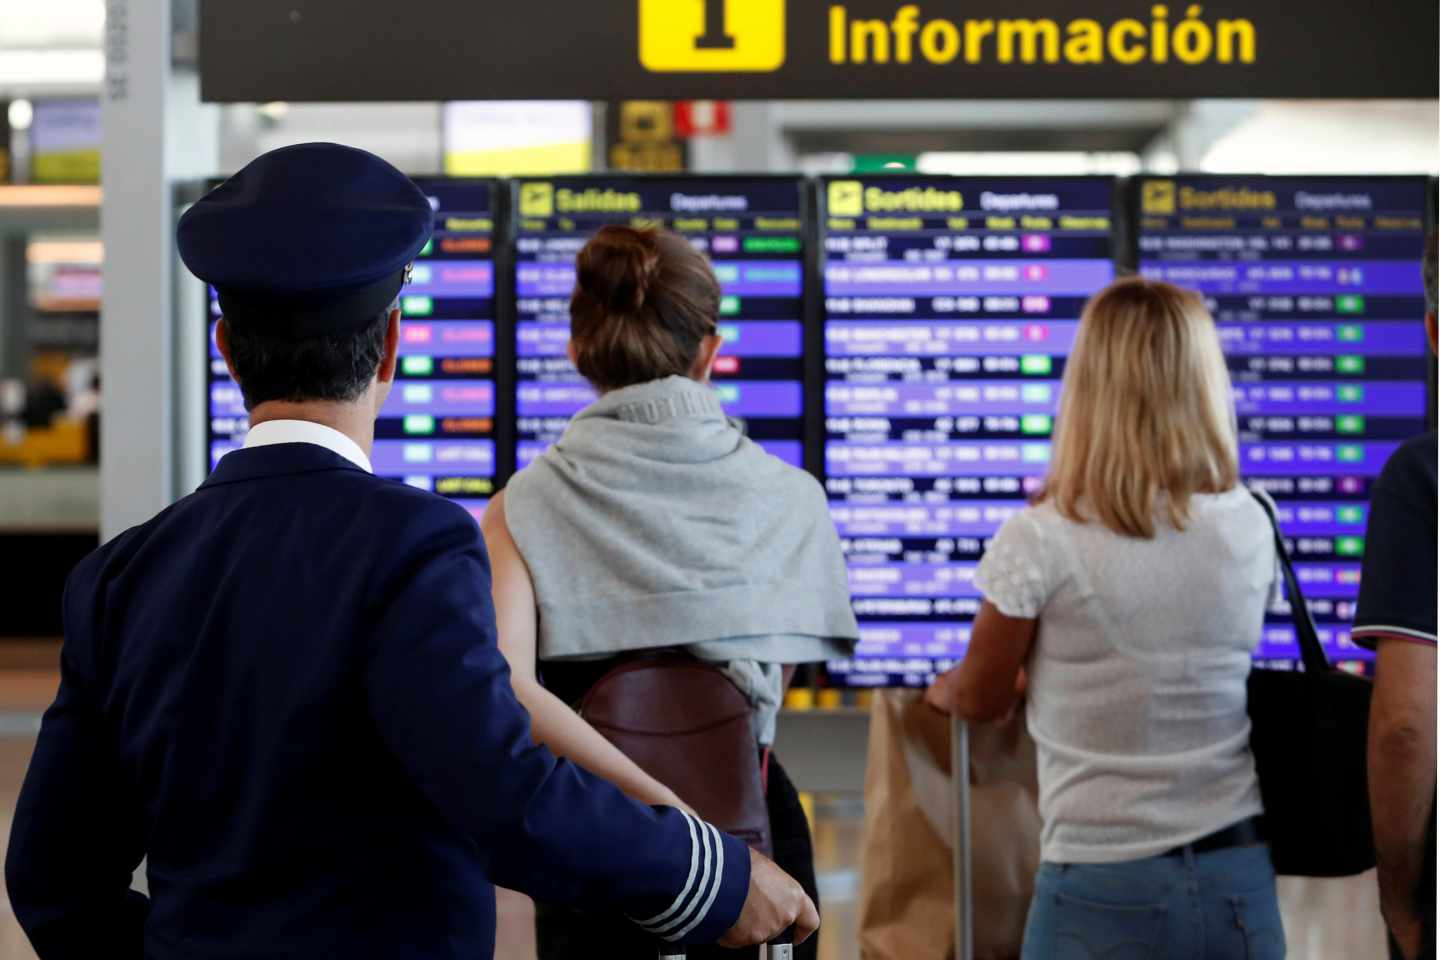 Pasajeros mirando el panel de vuelos en el aeropuerto El Prat.